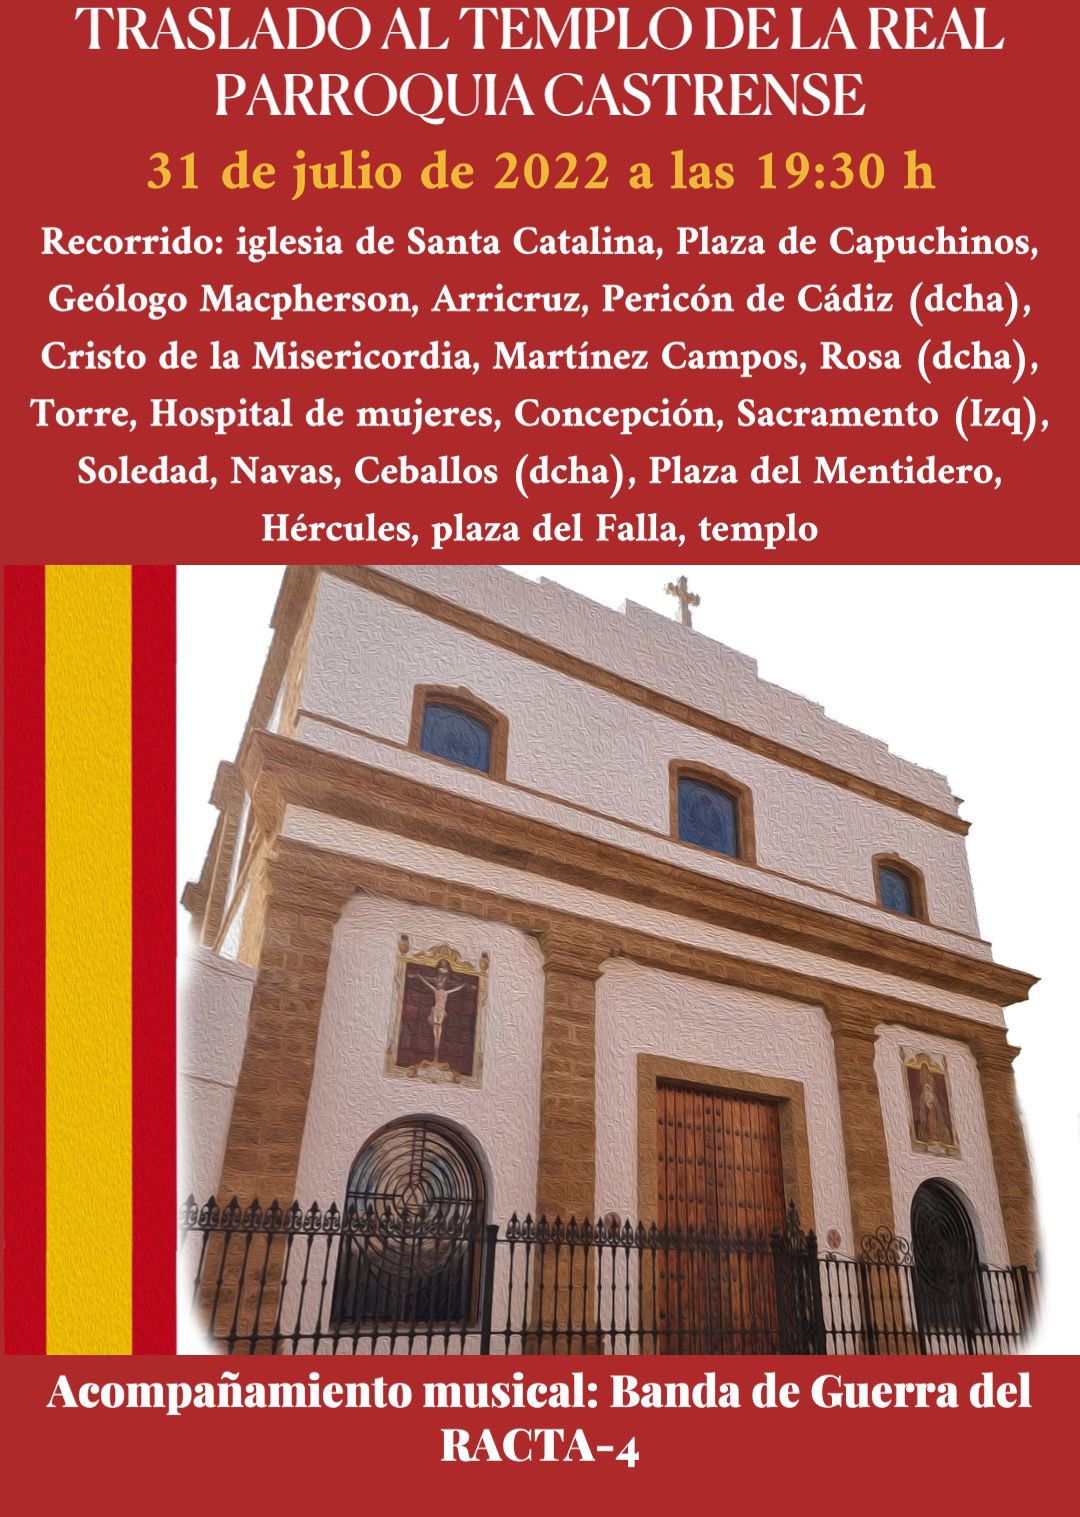 Informar que ha habido un pequeño cambio en el recorrido en en traslado al templo de la Real Parroquia Castrense de Cádiz este Domingo